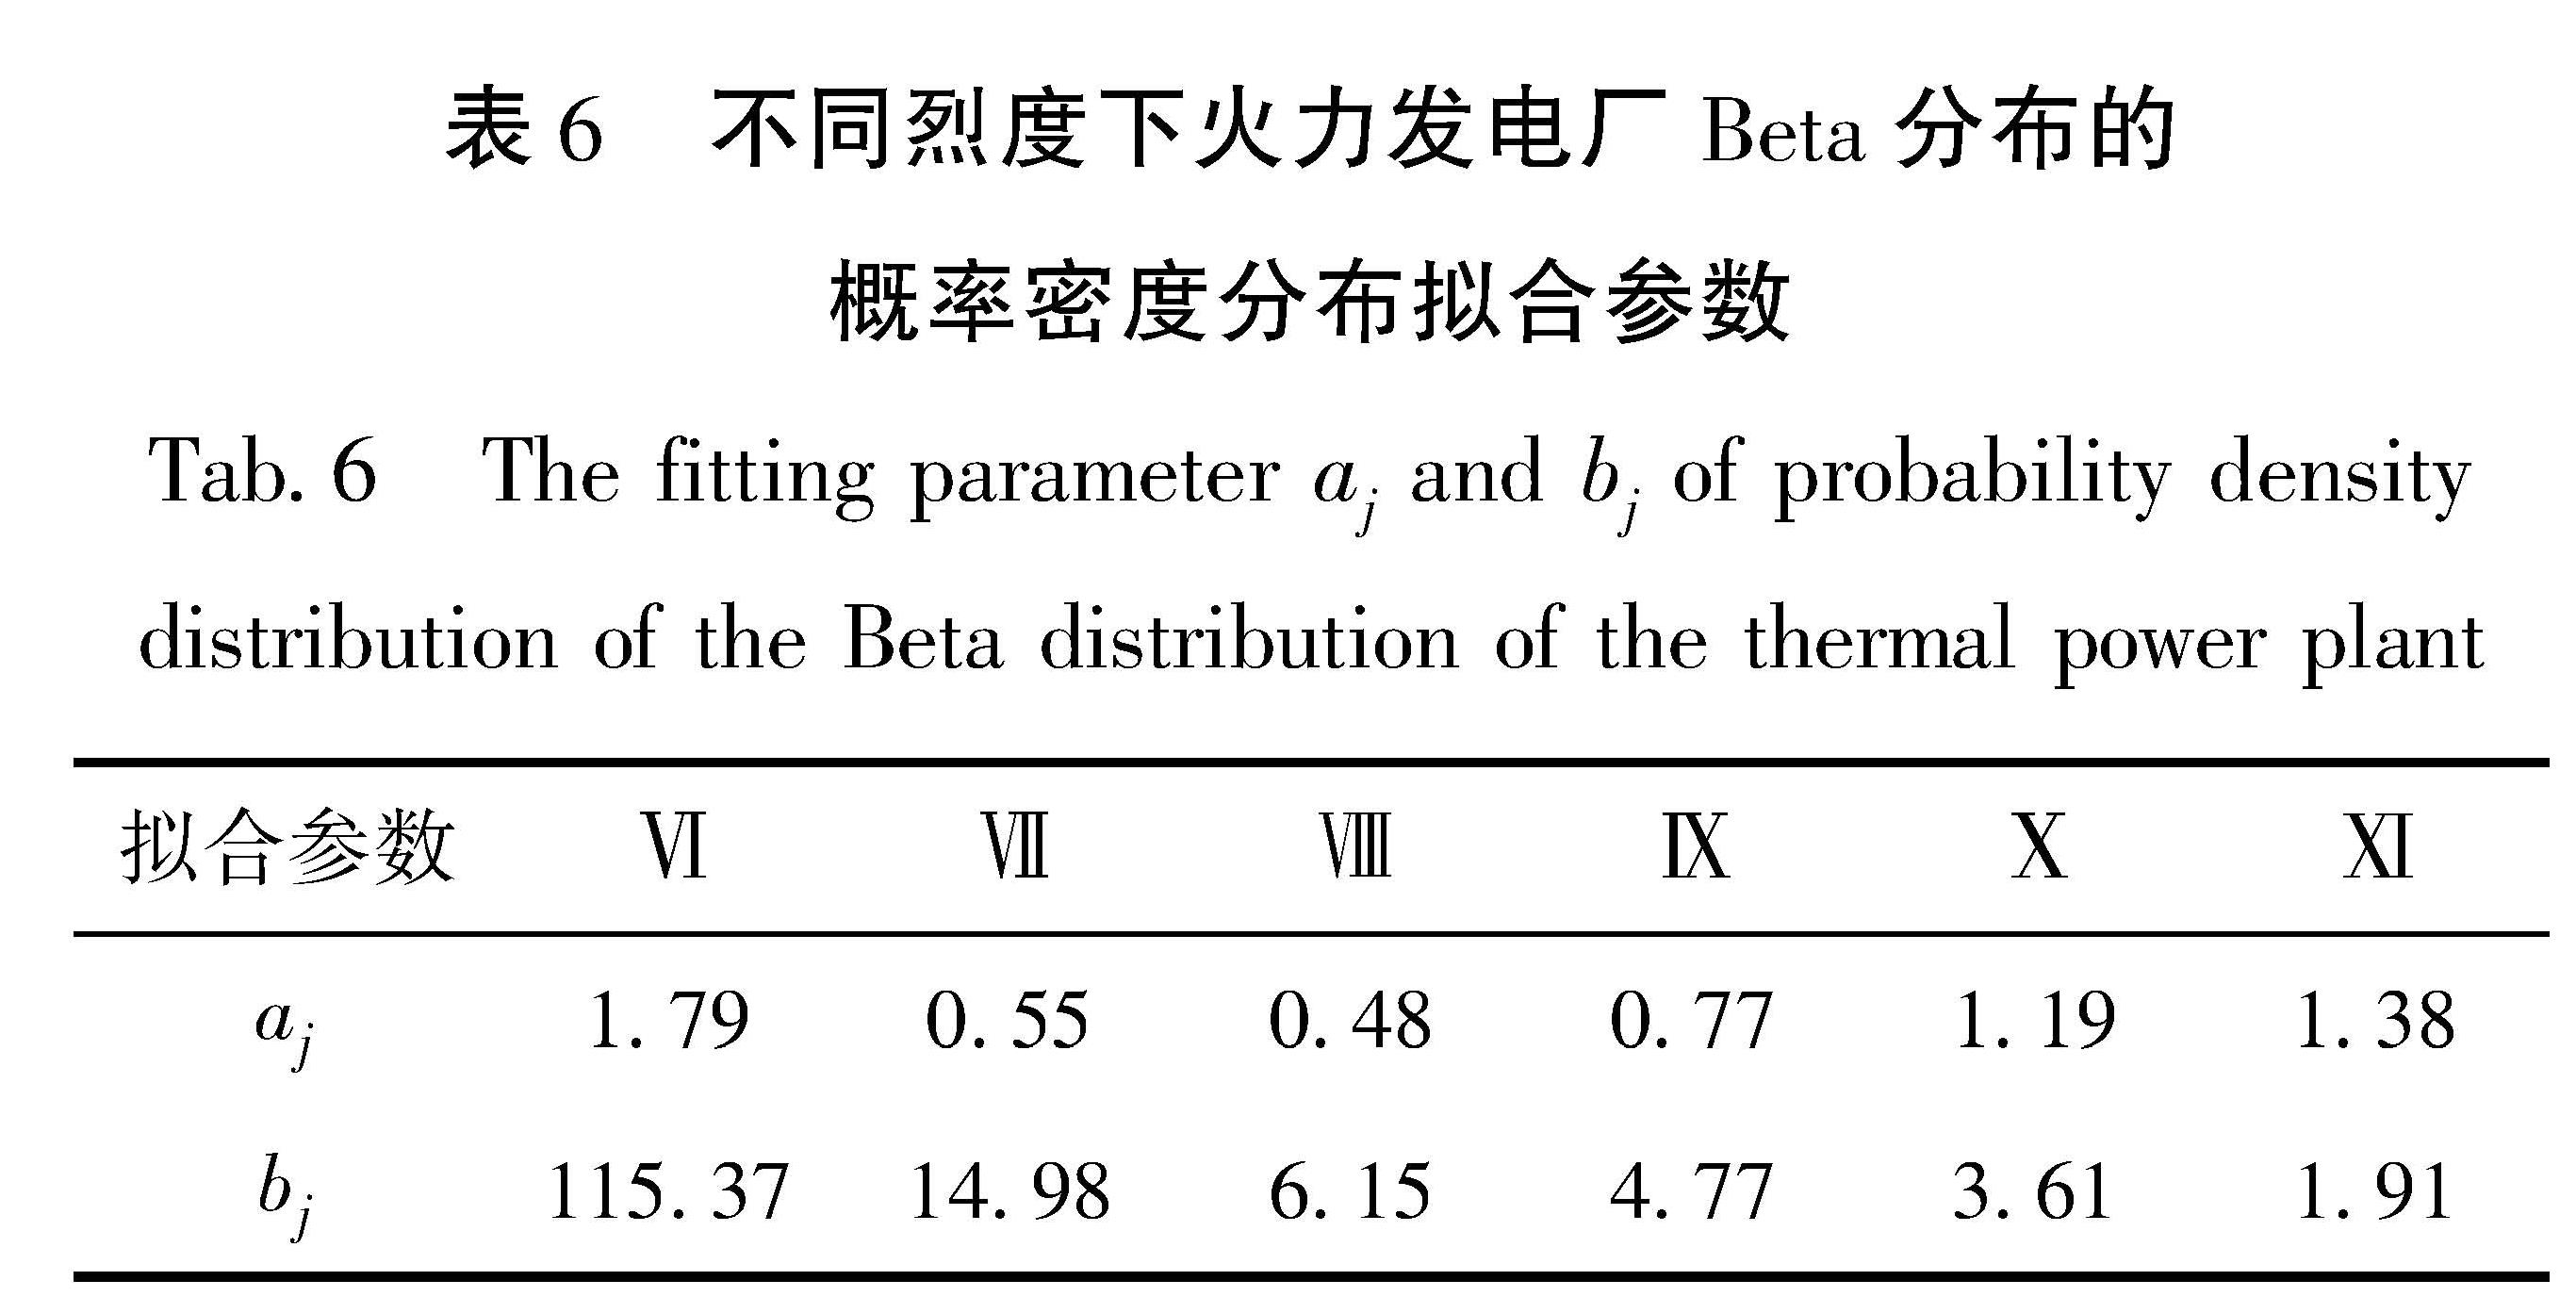 表6 不同烈度下火力发电厂Beta分布的概率密度分布拟合参数<br/>Tab.6 The fitting parameter aj and bj of probability density distribution of the Beta distribution of the thermal power plant